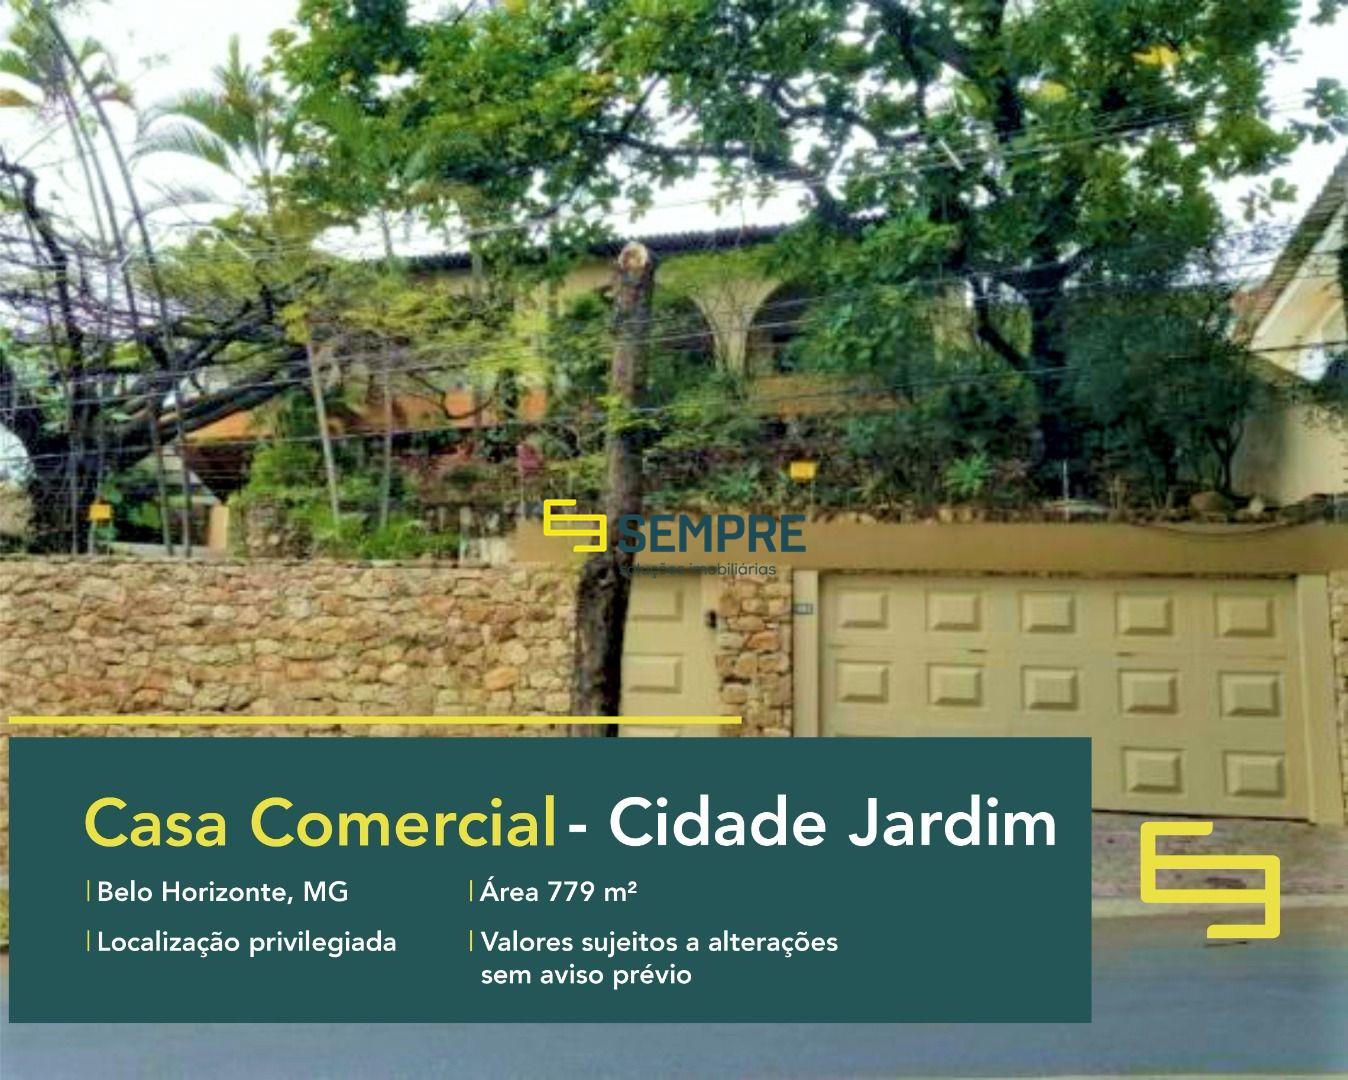 Casa comercial à venda no bairro Cidade Jardim em Belo Horizonte, excelente localização. O ponto comercial conta com área de 779 m².